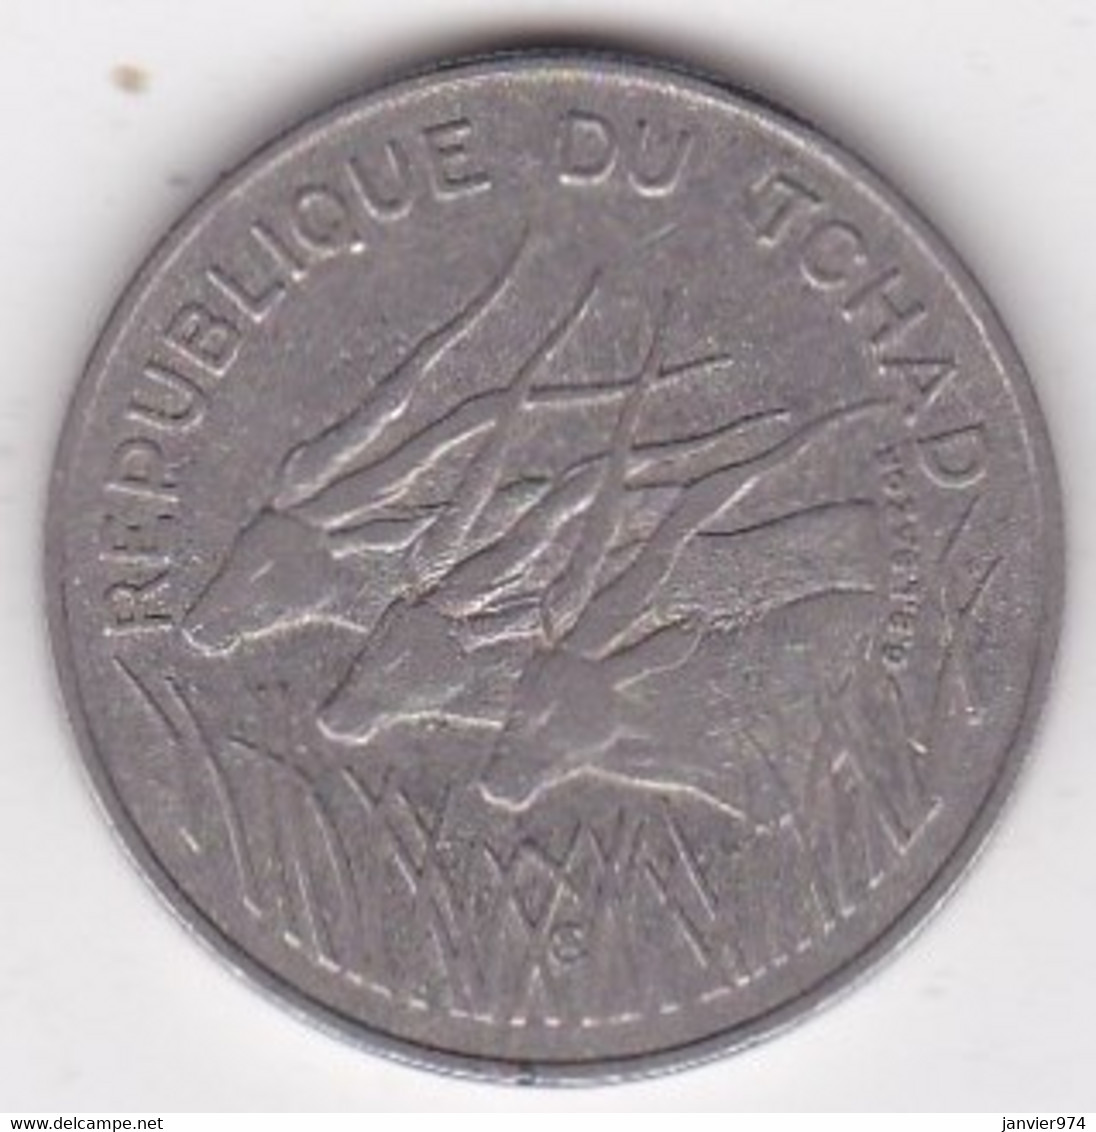 République Du Tchad 100 Francs 1990, Cupro Nickel , KM# 3 - Chad